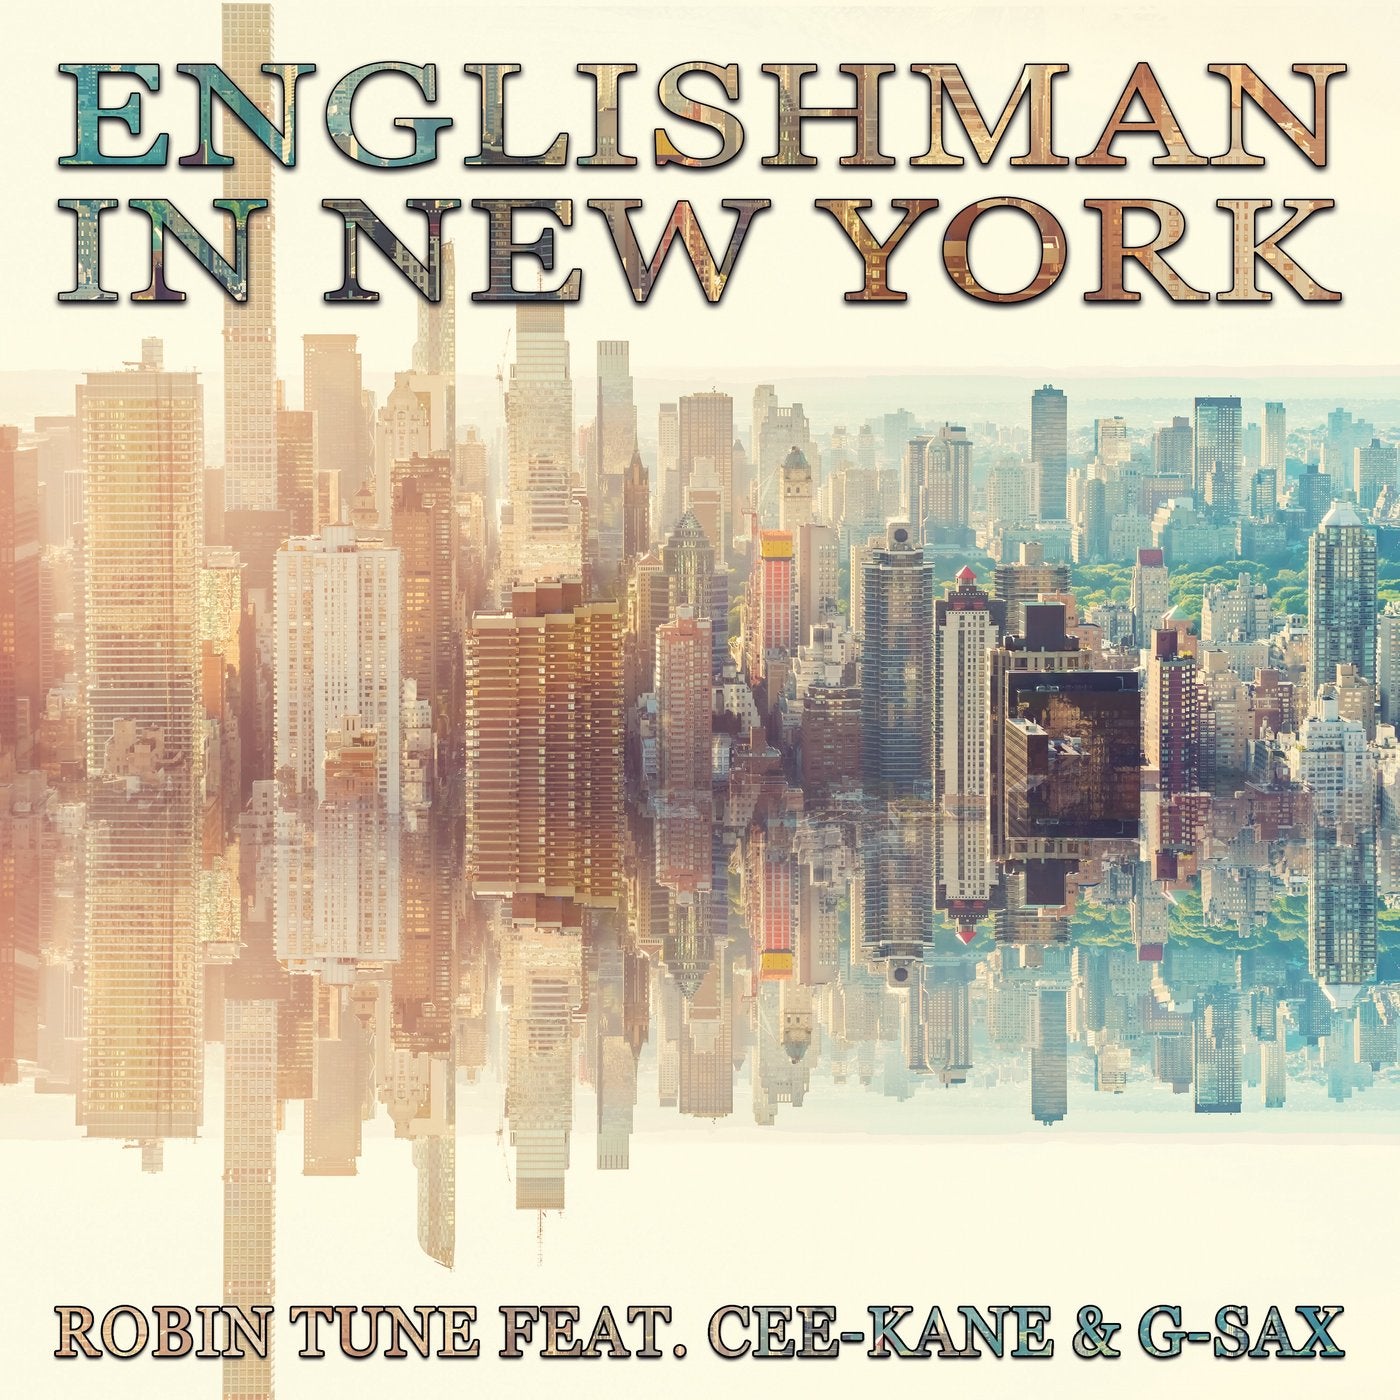 Englishman in New York